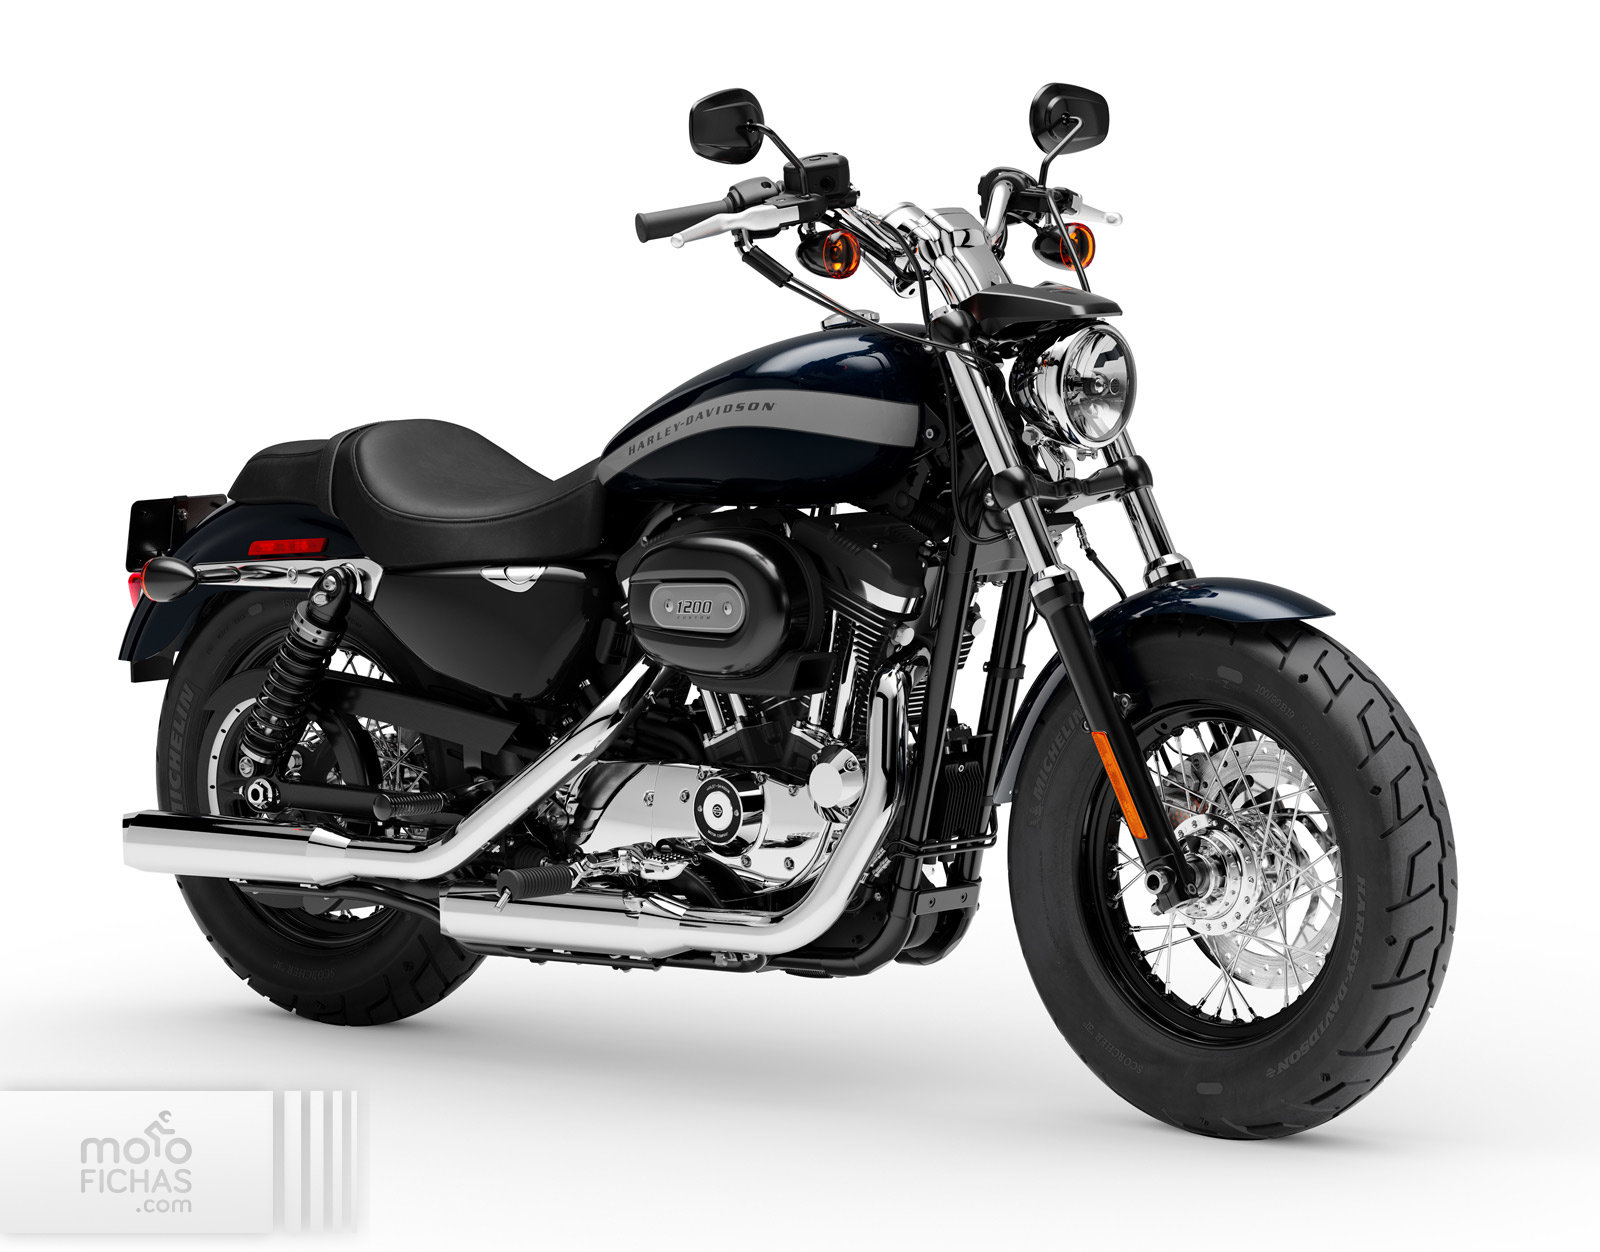 Harley Davidson 1200 Custom 2017 2020 Precio Ficha Opiniones Y Ofertas